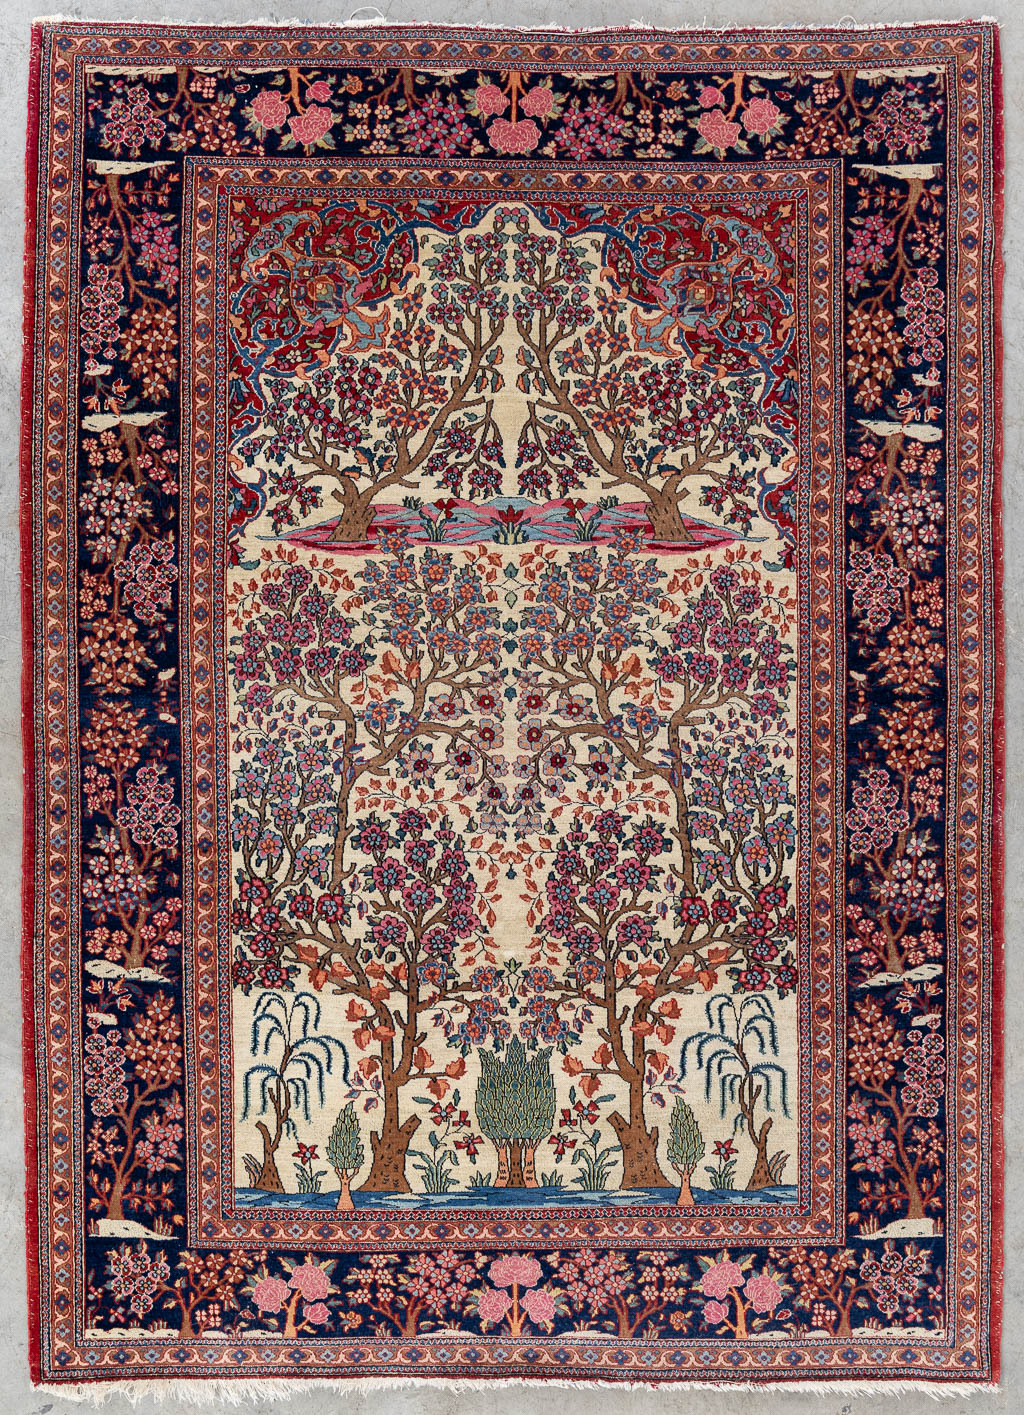 Lot 216 Een fijn Oosters handgeknoopt en antiek tapijt, Isfahan. (L:204 x W:146 cm)